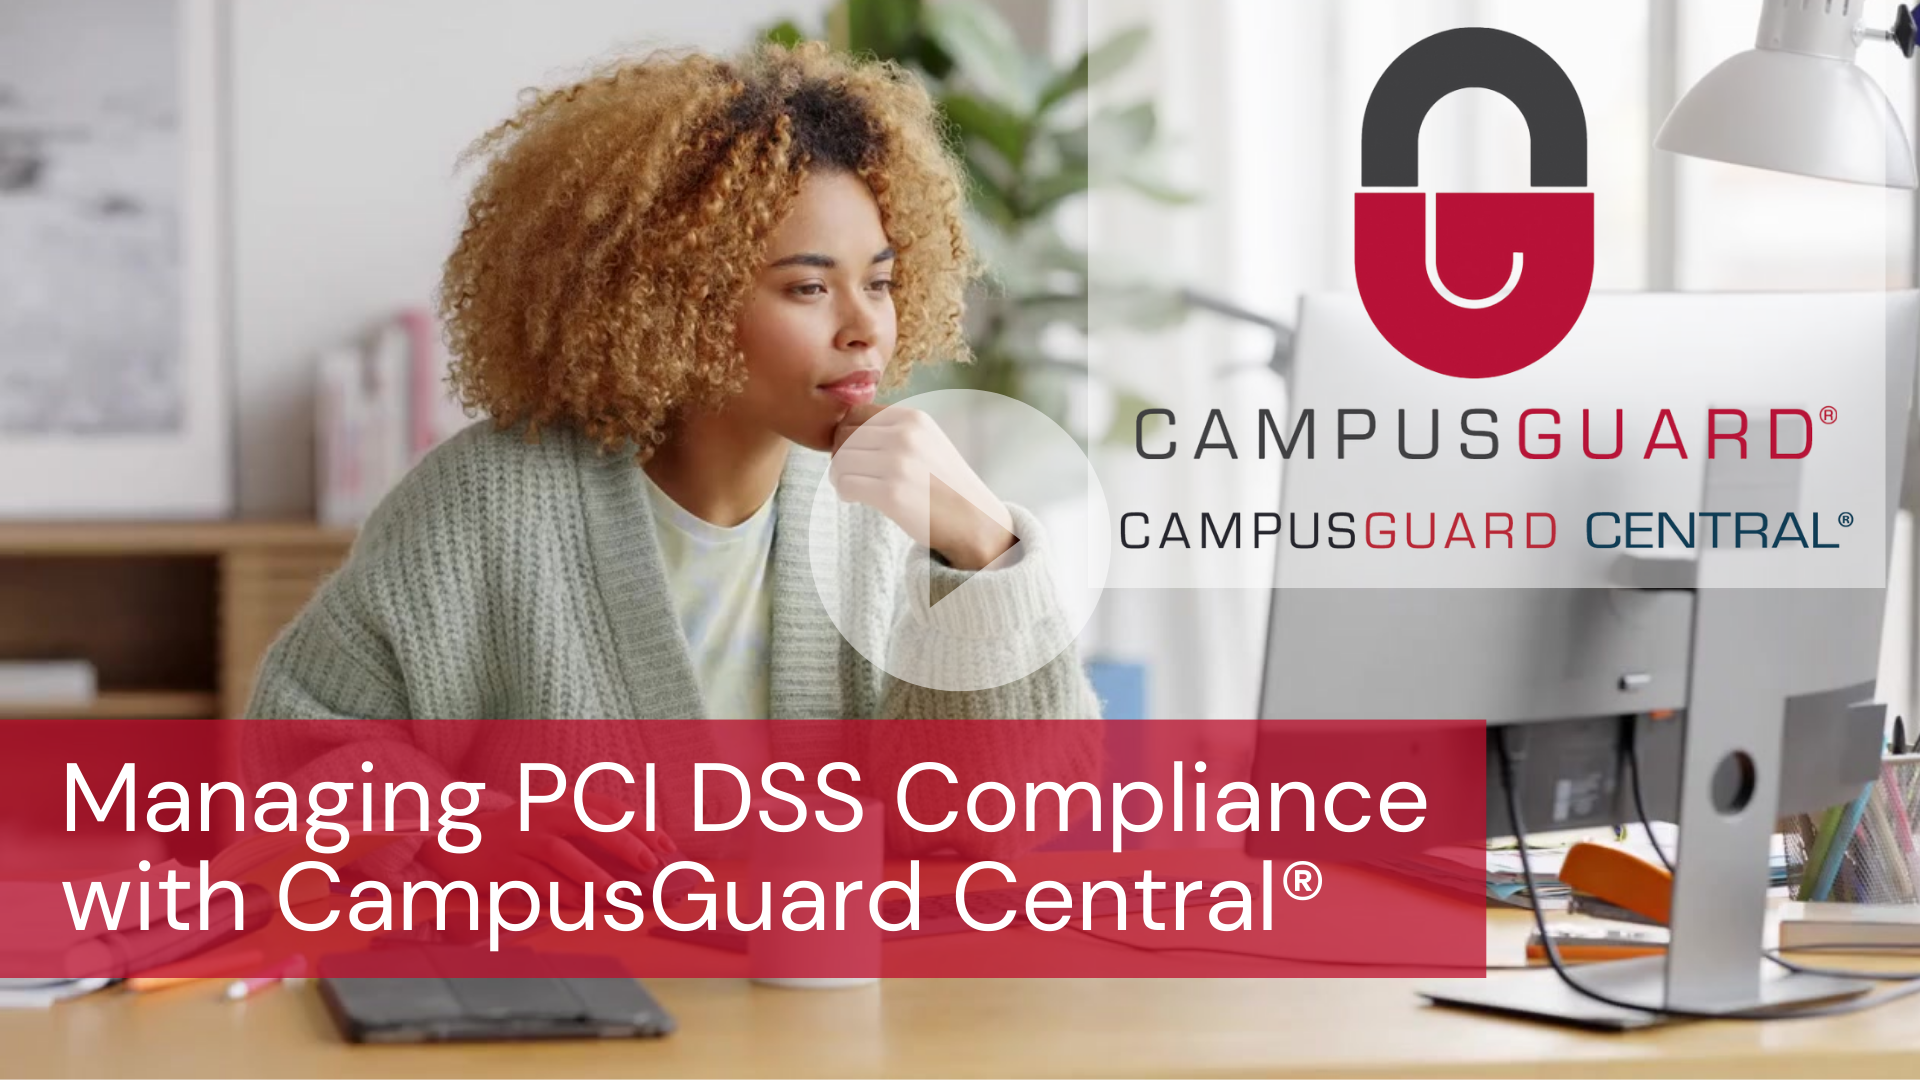 CampusGuard Central PCI DSS Compliance